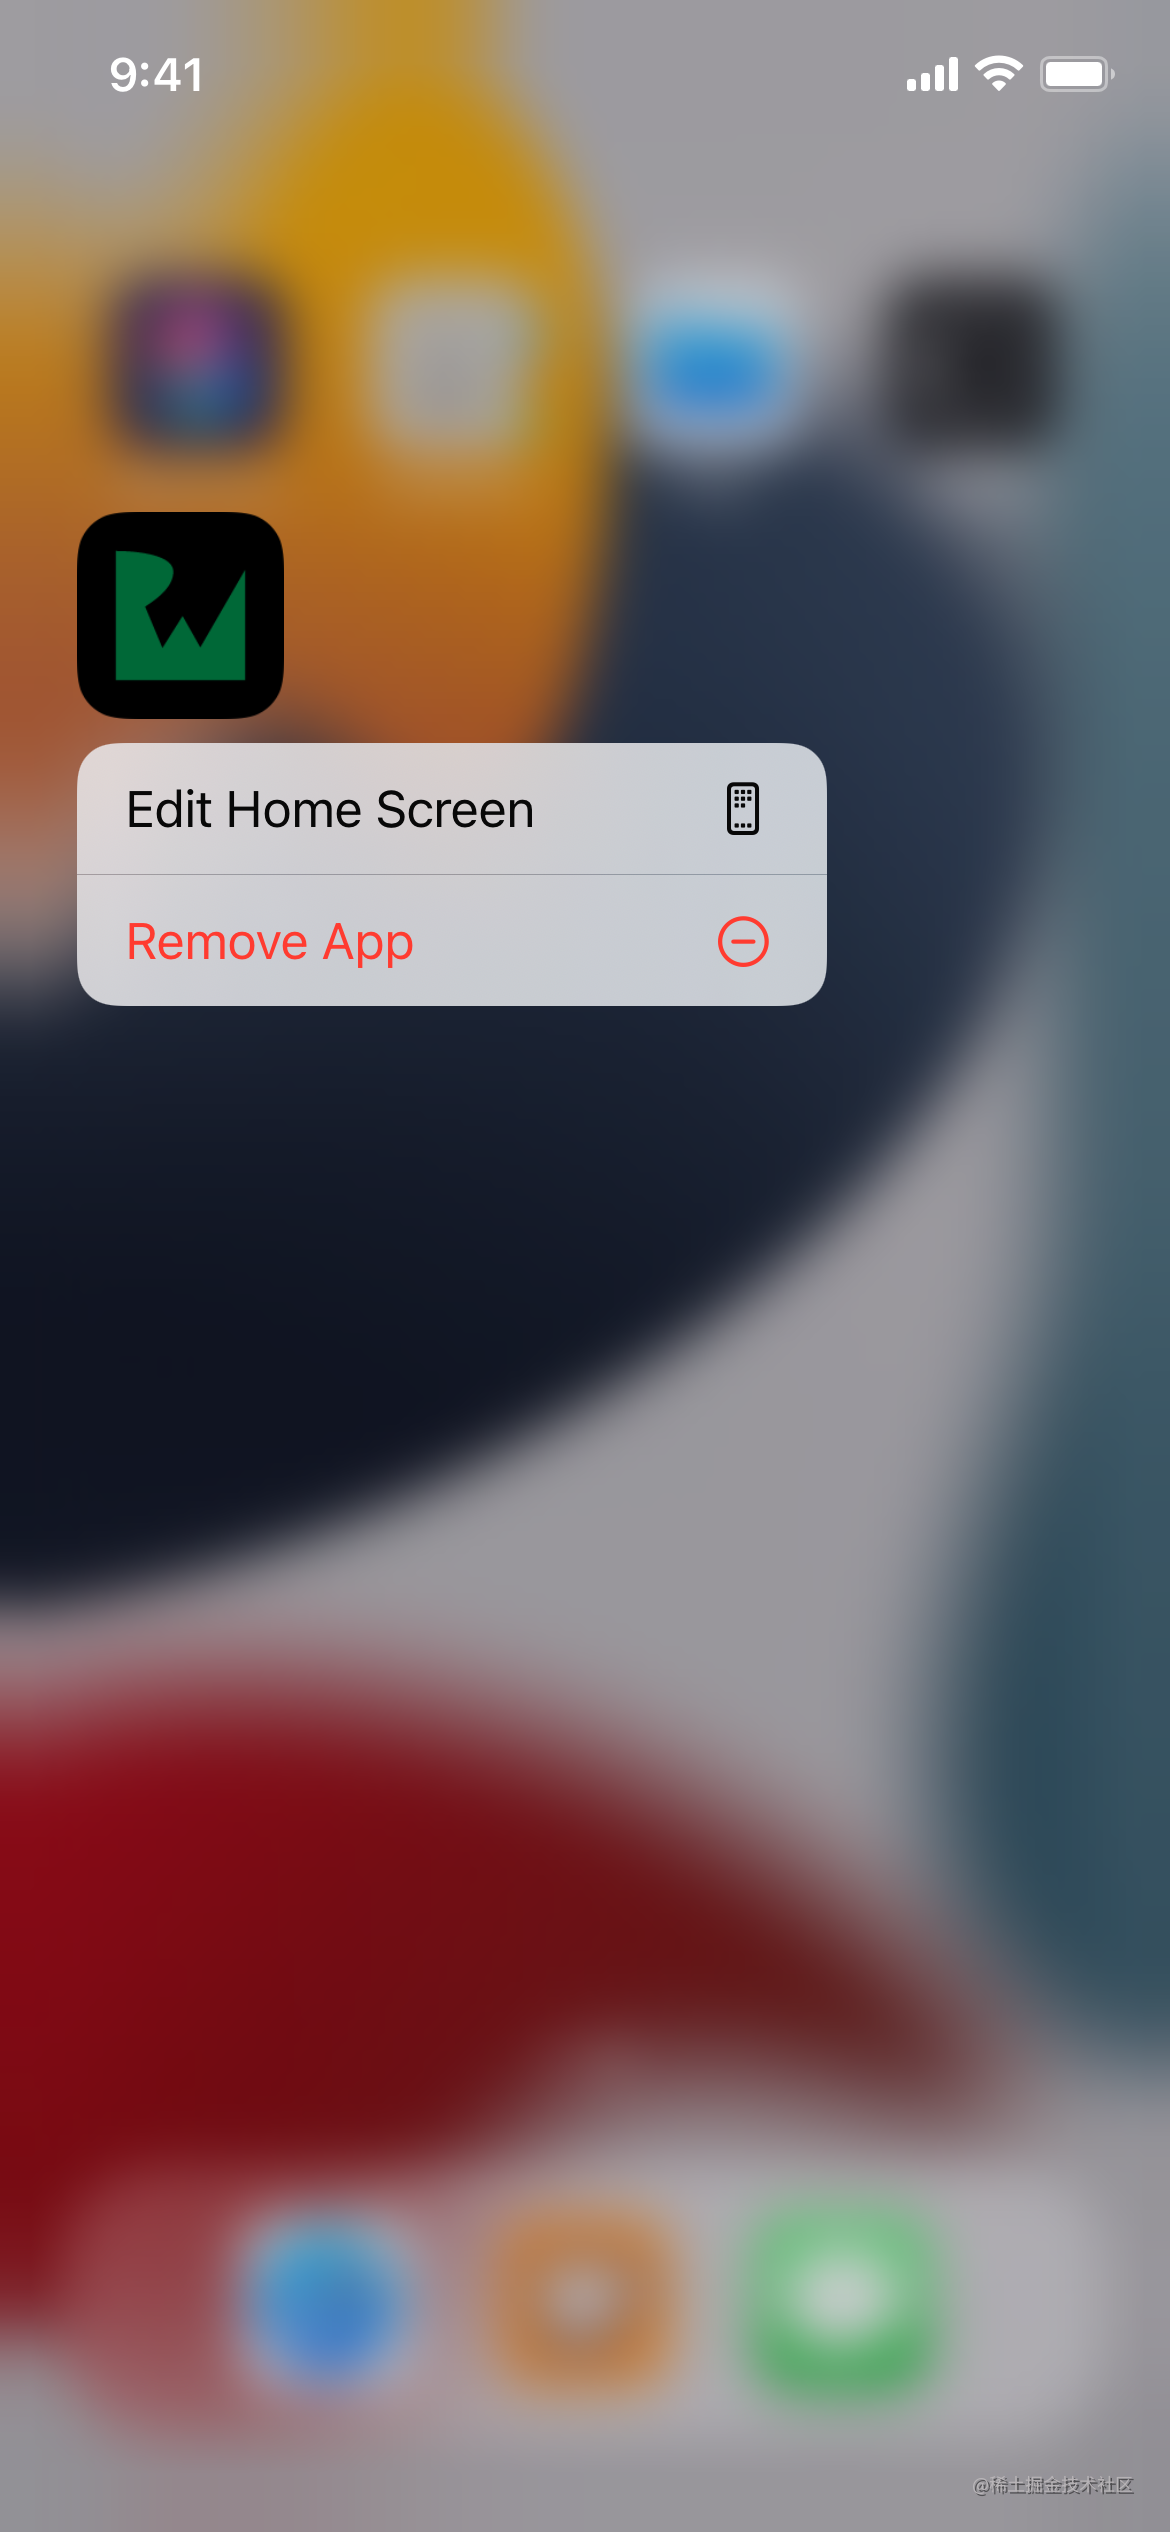 ホーム画面の「NoteBuddy」アプリアイコンを長押しした後に表示されるメニューには、ホーム画面を「編集」するか、アプリを「削除」するオプションが含まれています。